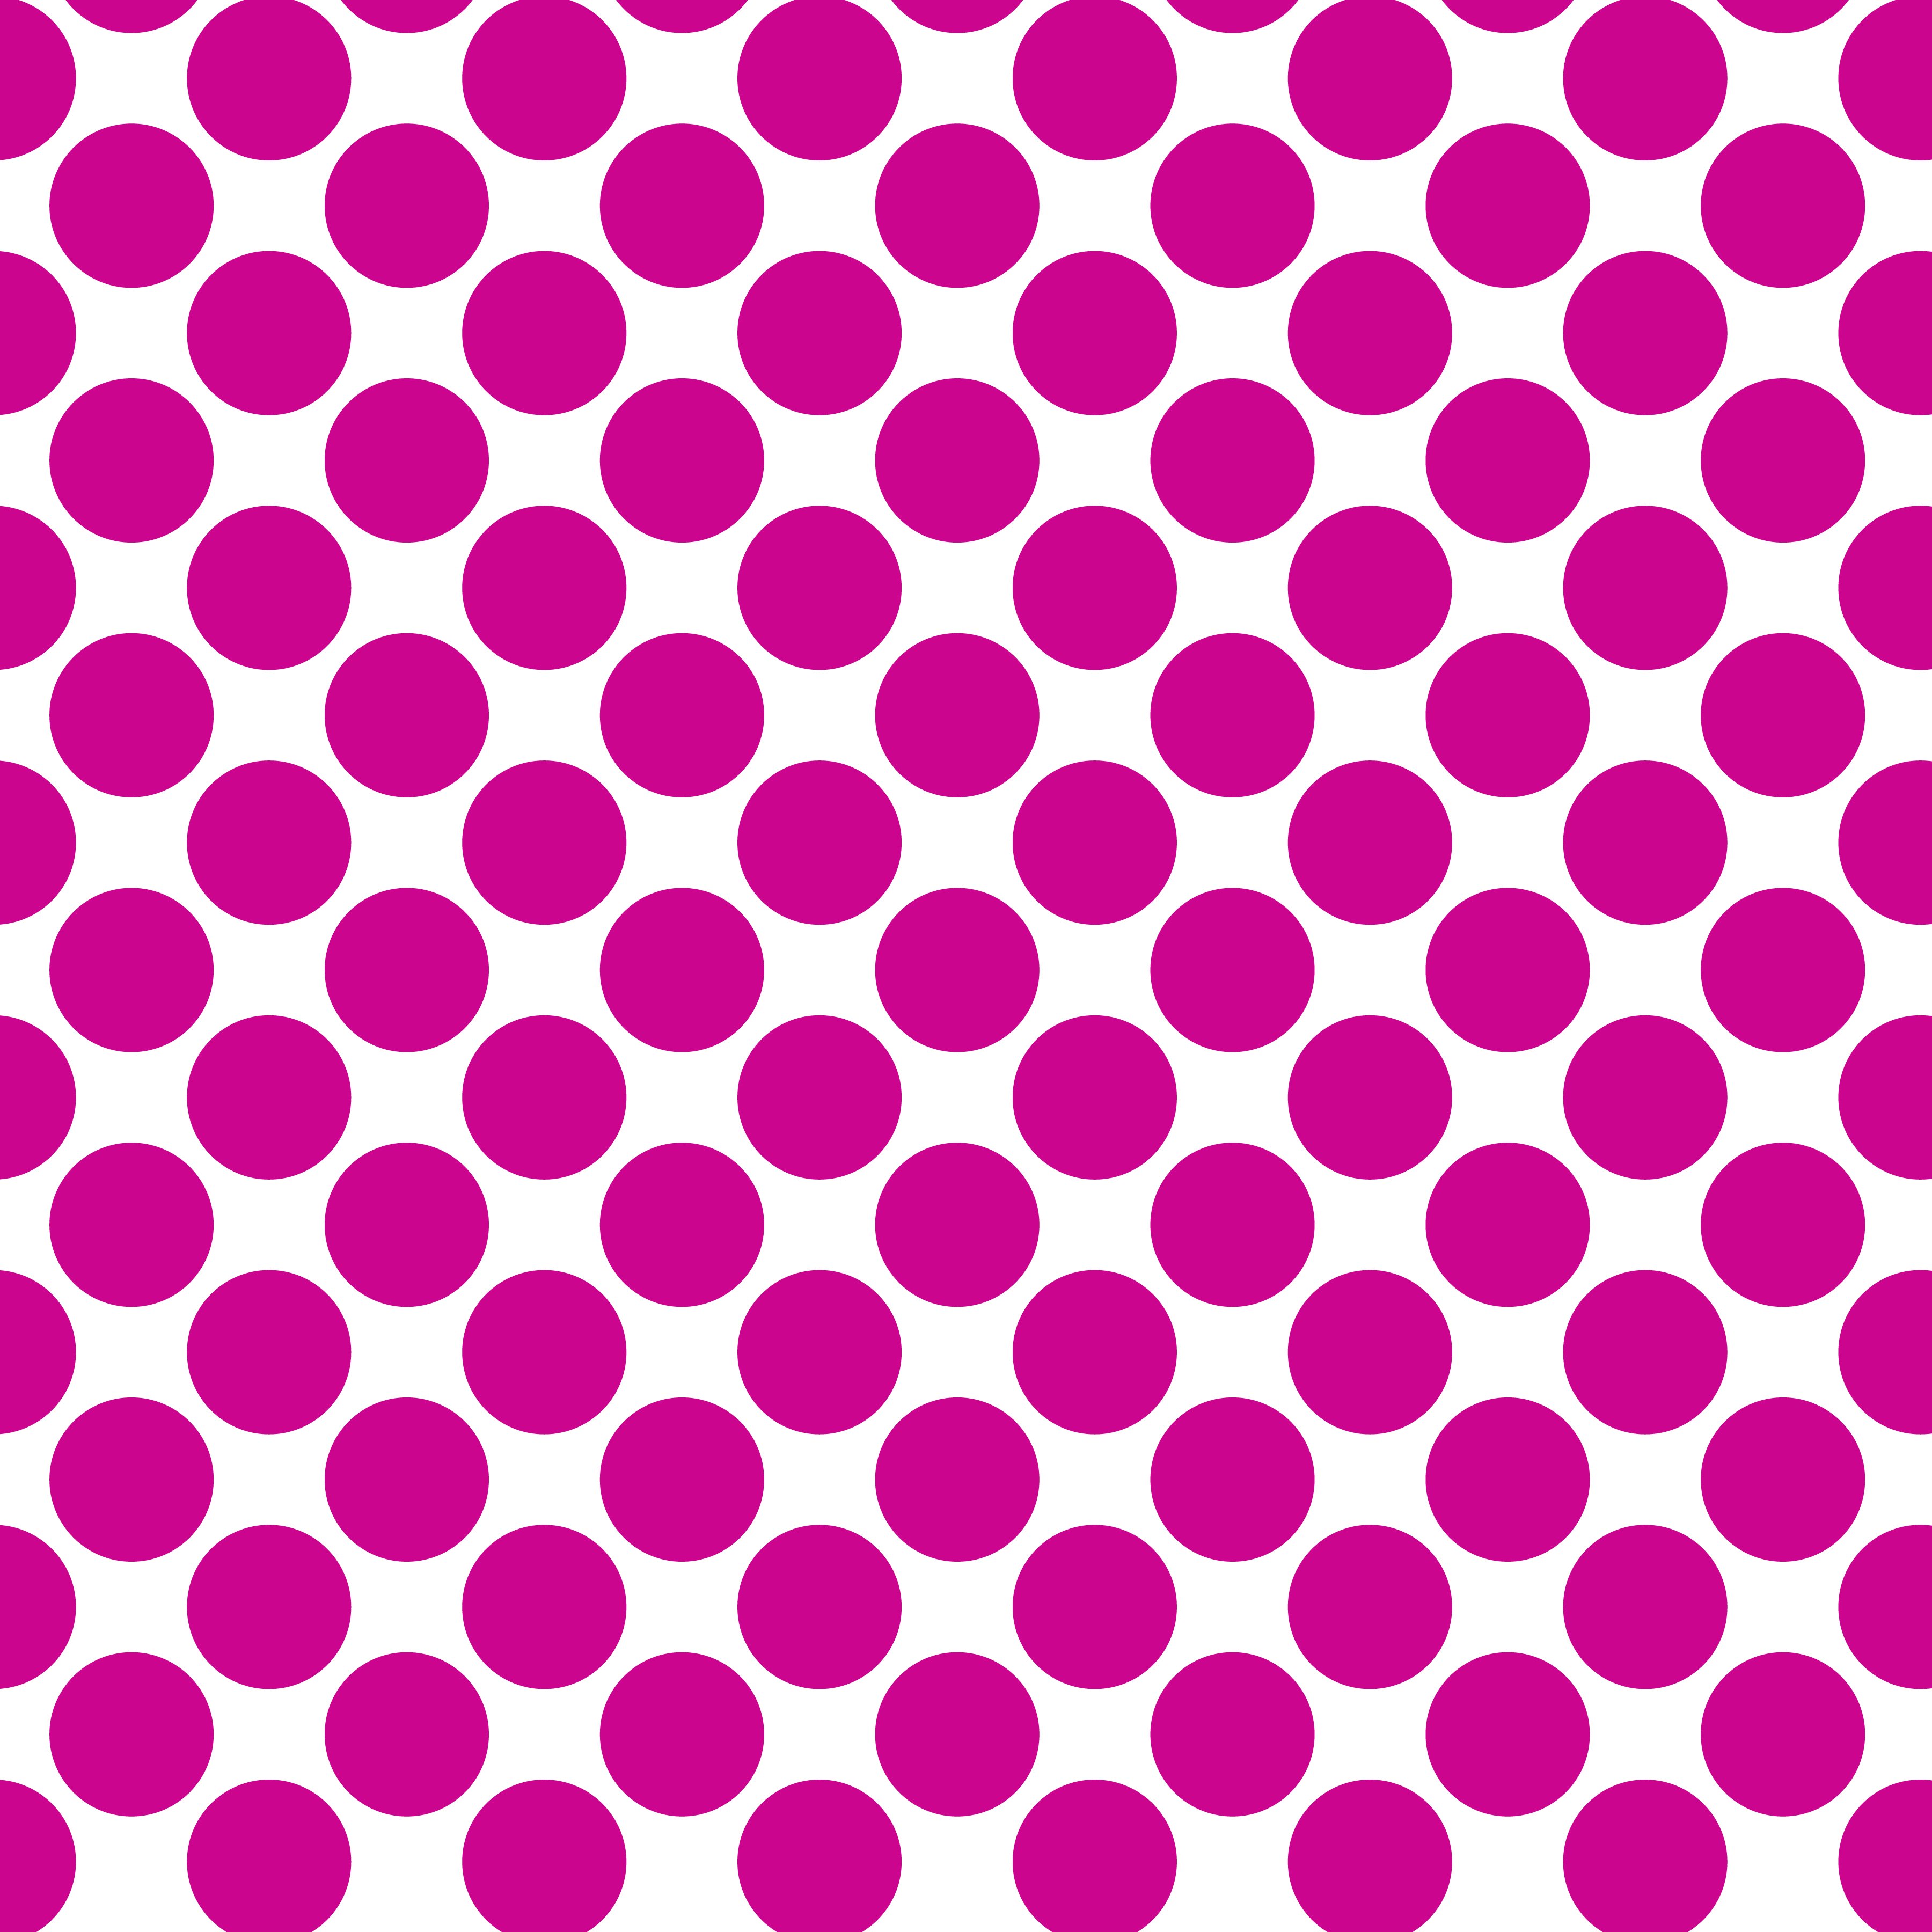 Polka Dot 1 cm Beyaz - Kırmızı Menekşe Puantiye Dekoratif Baskı Kumaş